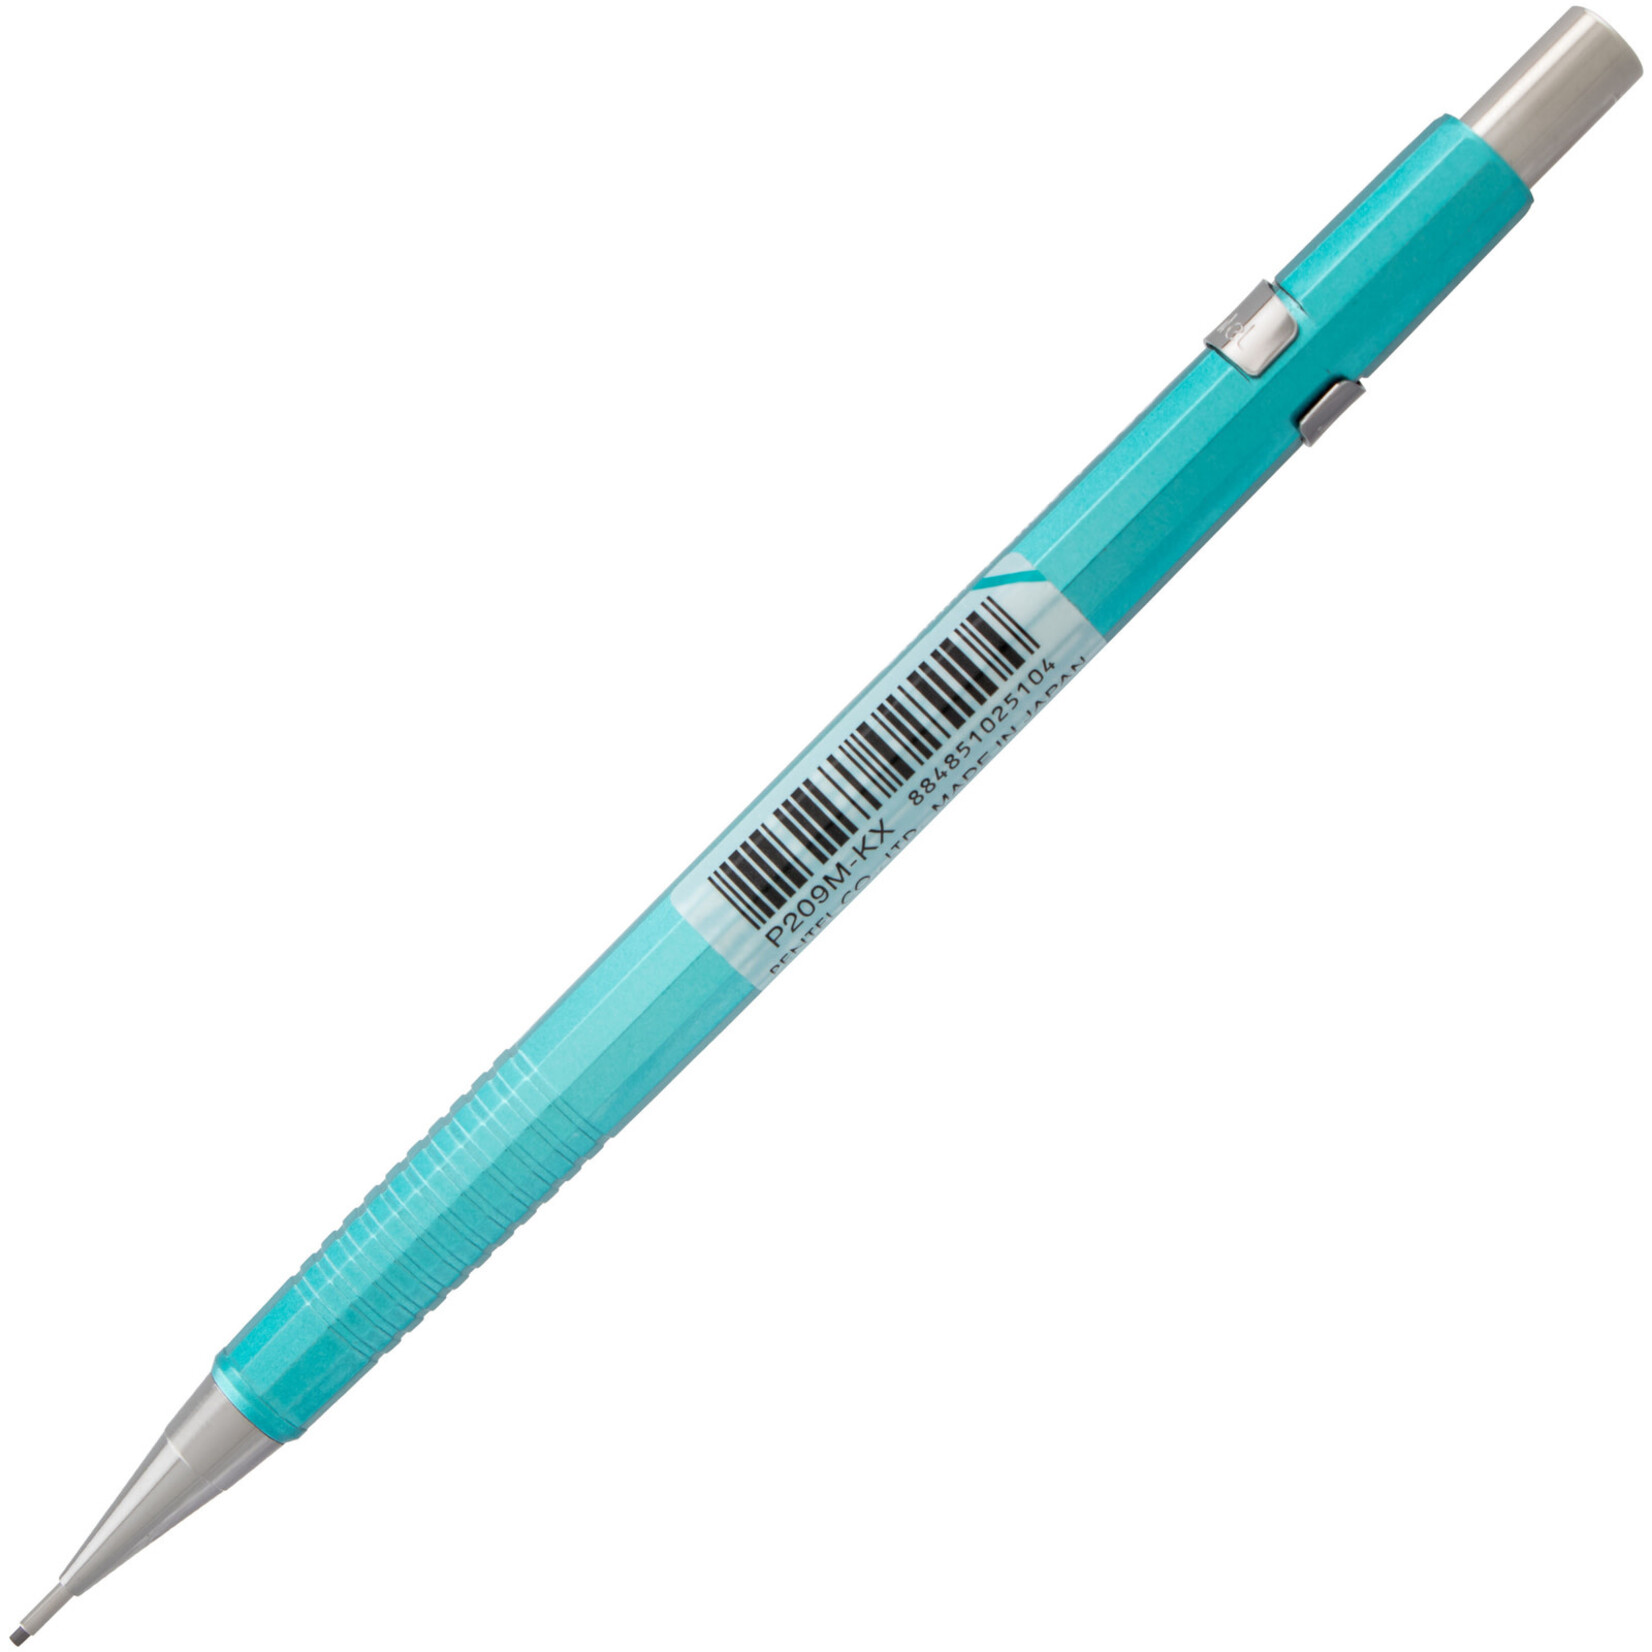 Pentel Sharp Mechanical Pencil .9mm Metallic Green/Blue